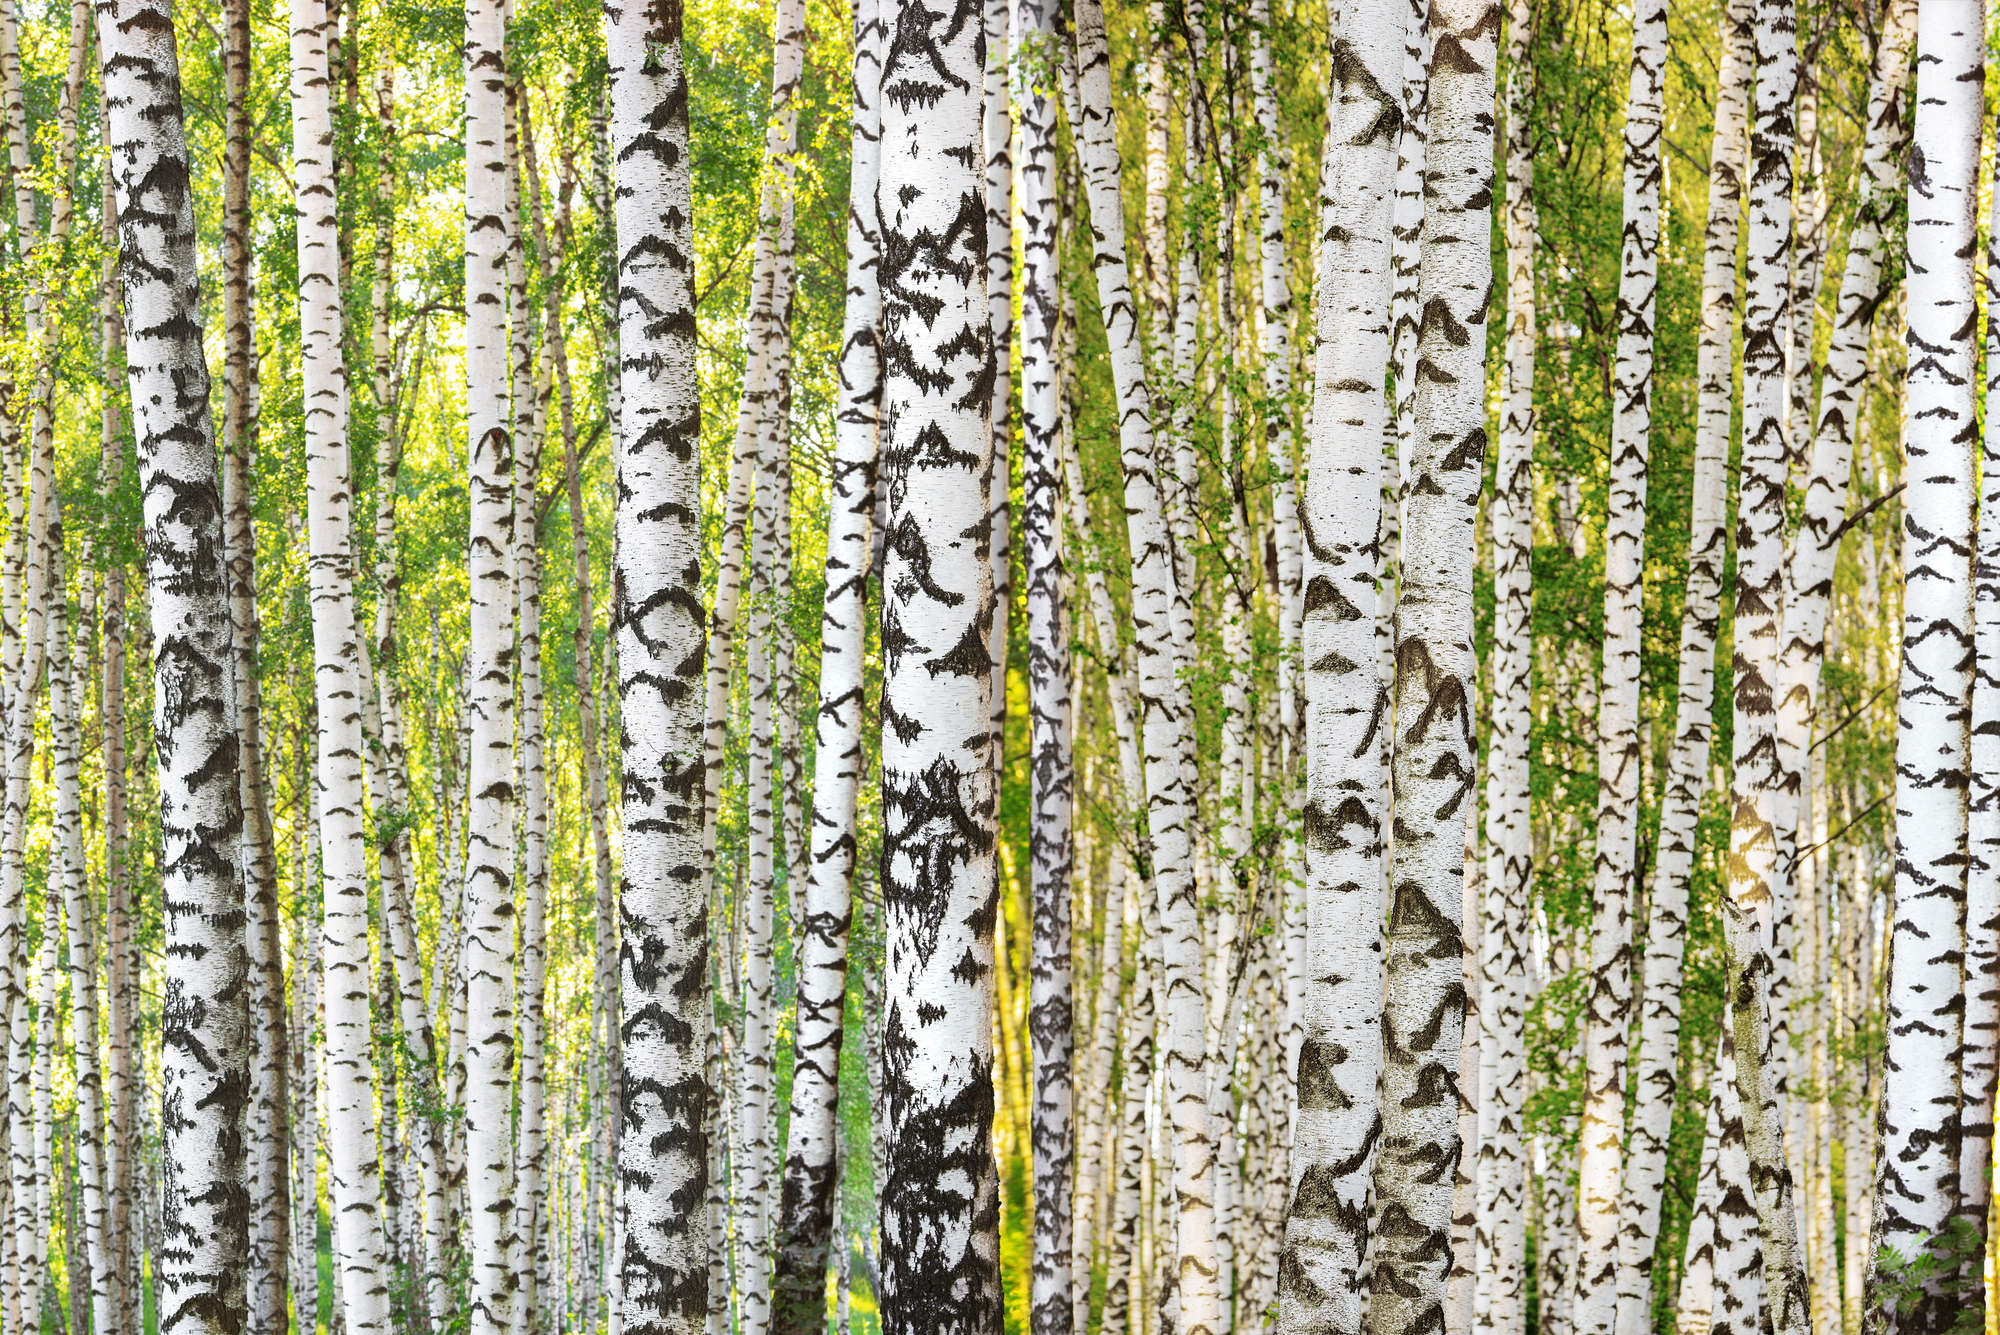             Papel pintado de bosque de abedules con motivo de tronco de árbol sobre tela no tejida con textura
        